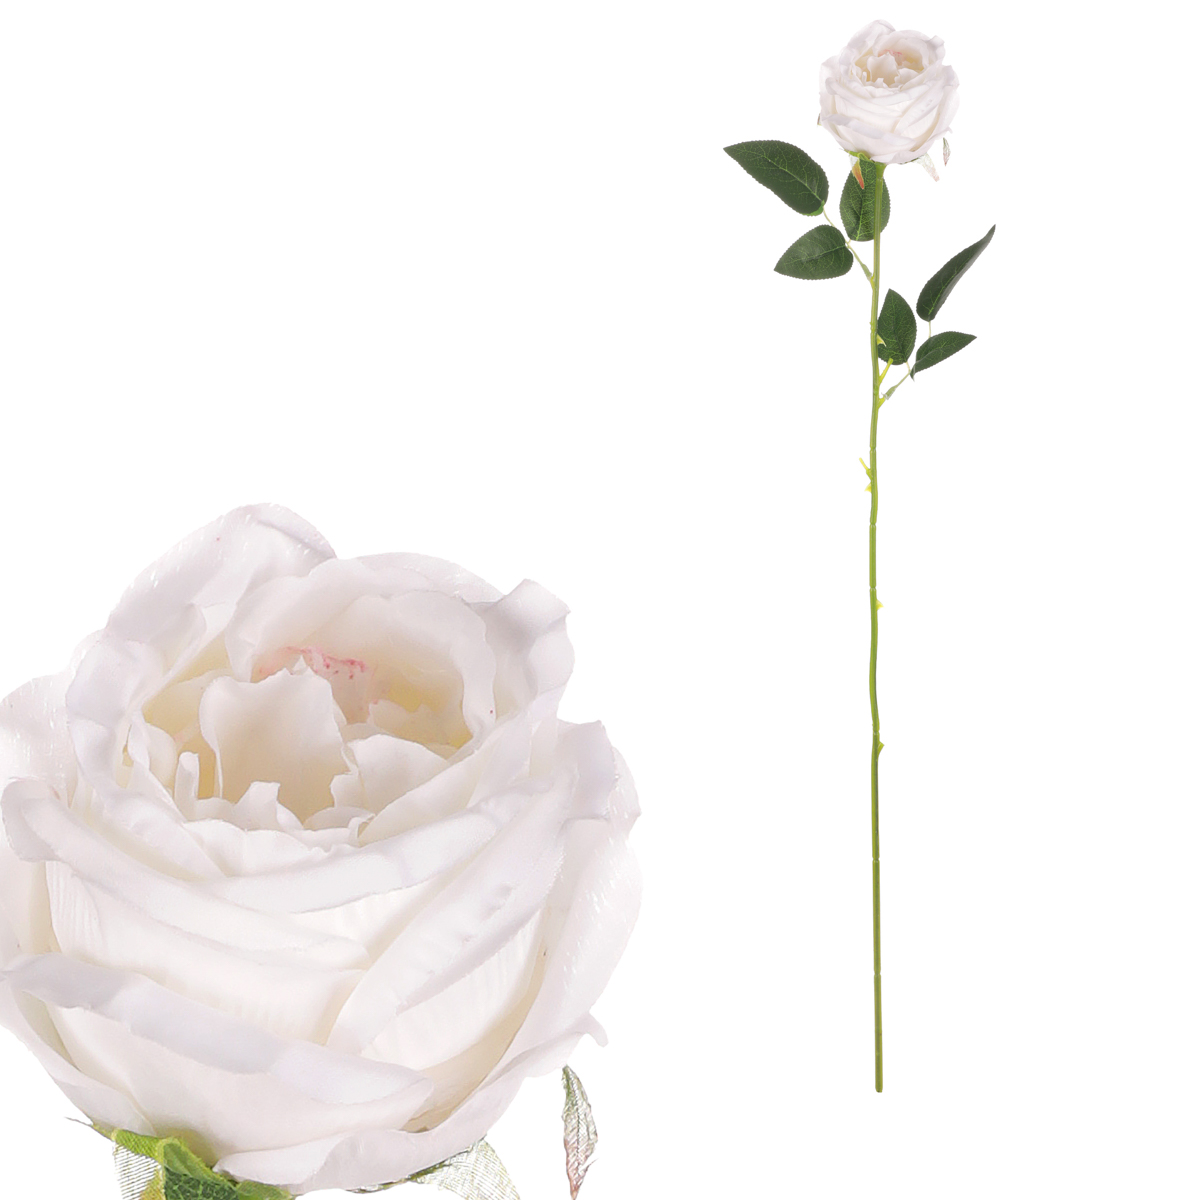 Růže, barva bílá.